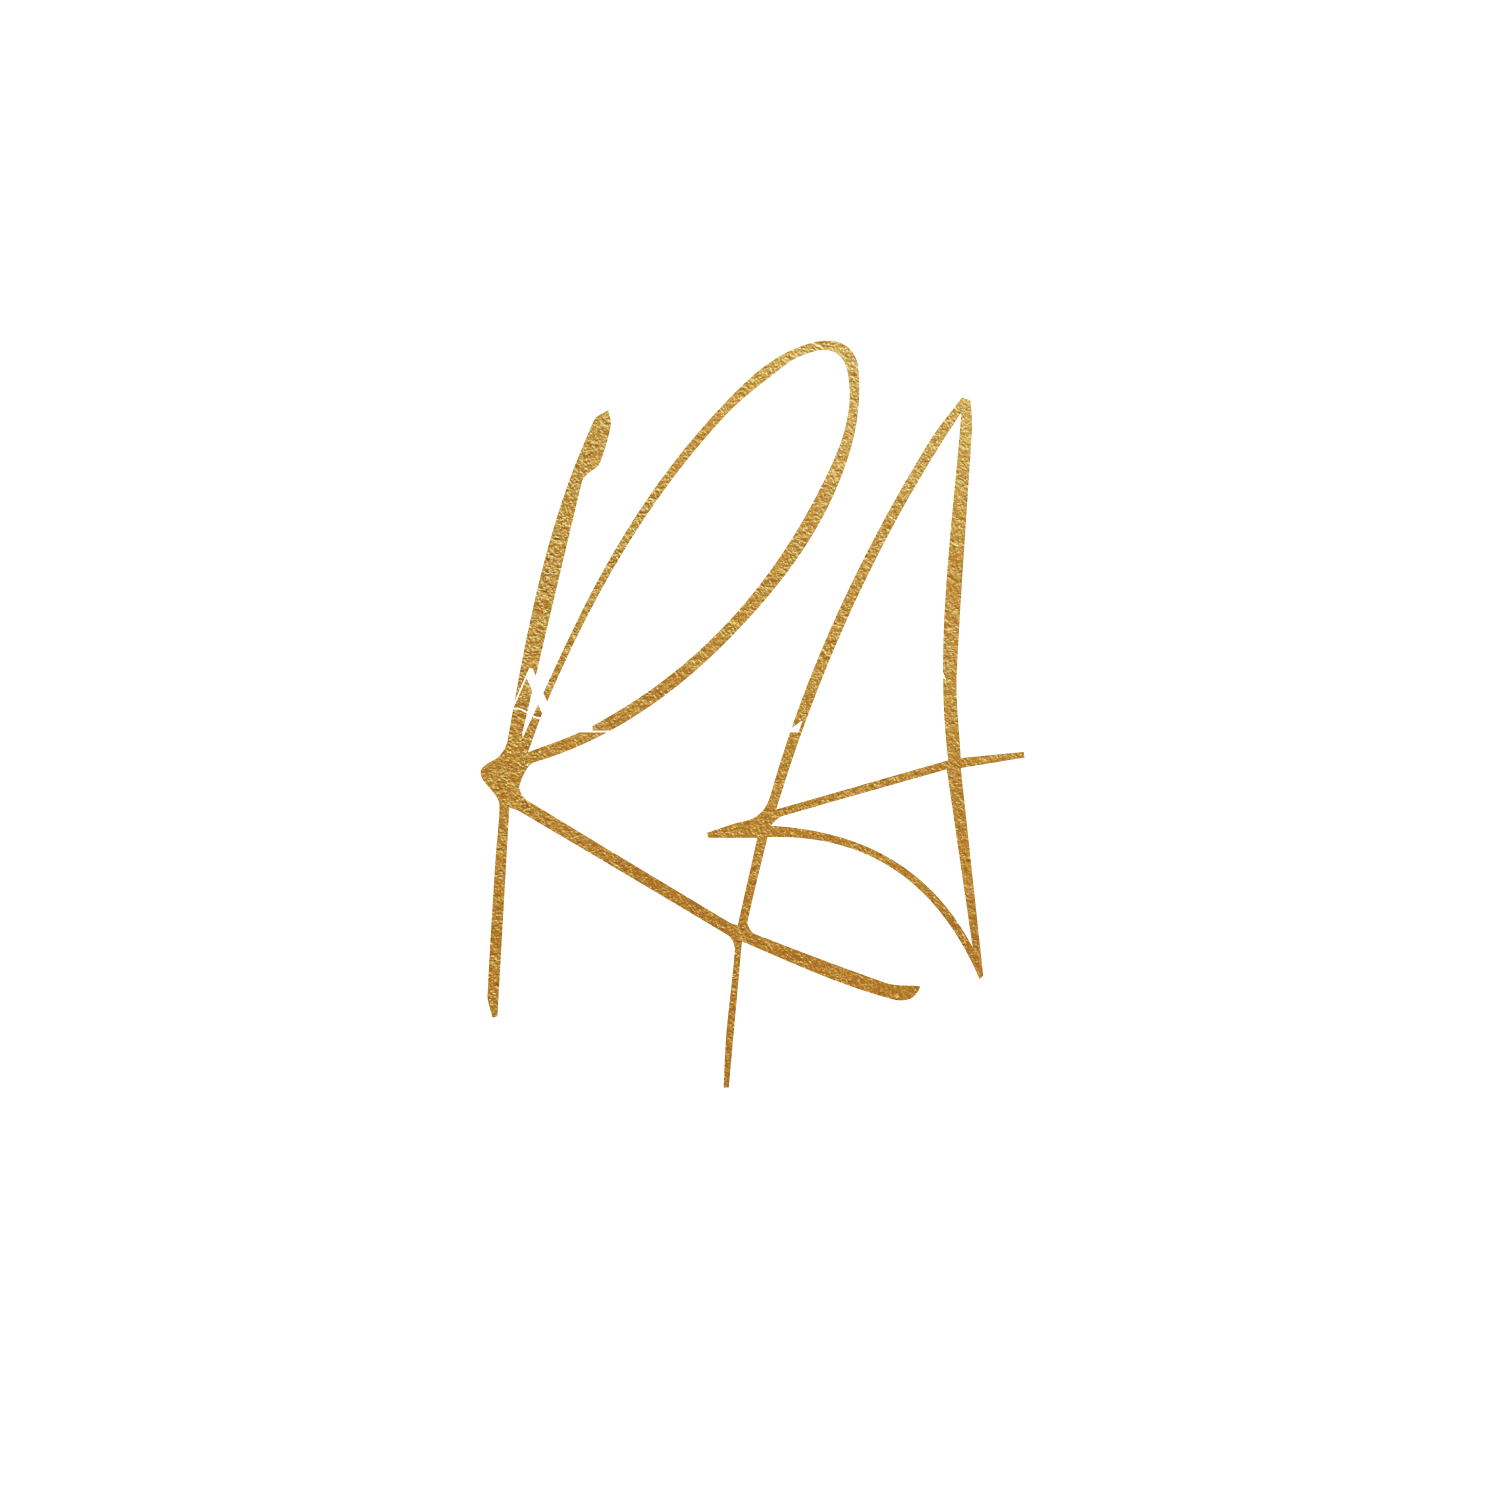 Revival Aesthetics MedSpa